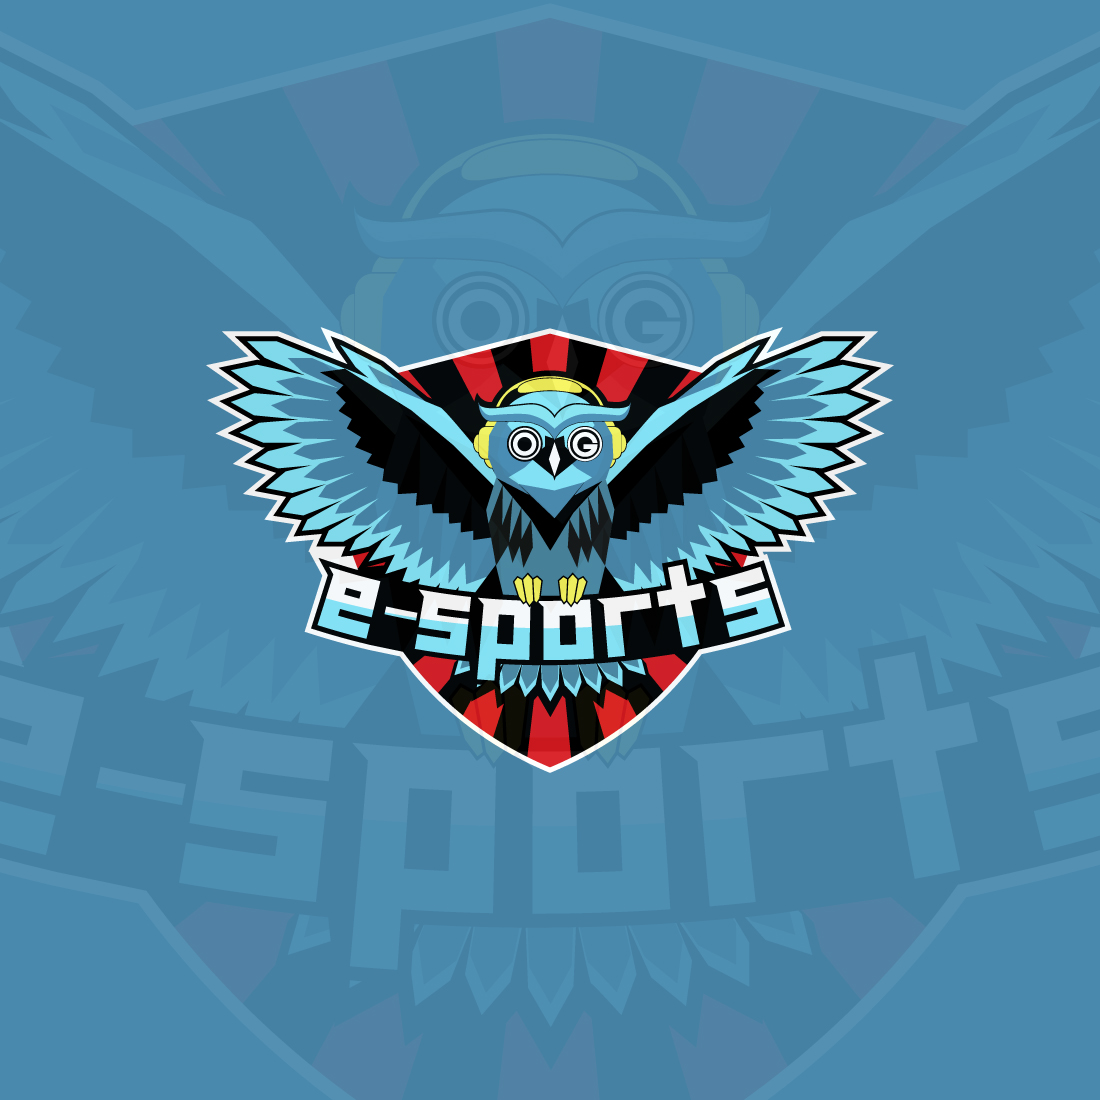 Esports logo | Owl sports logo preview image.